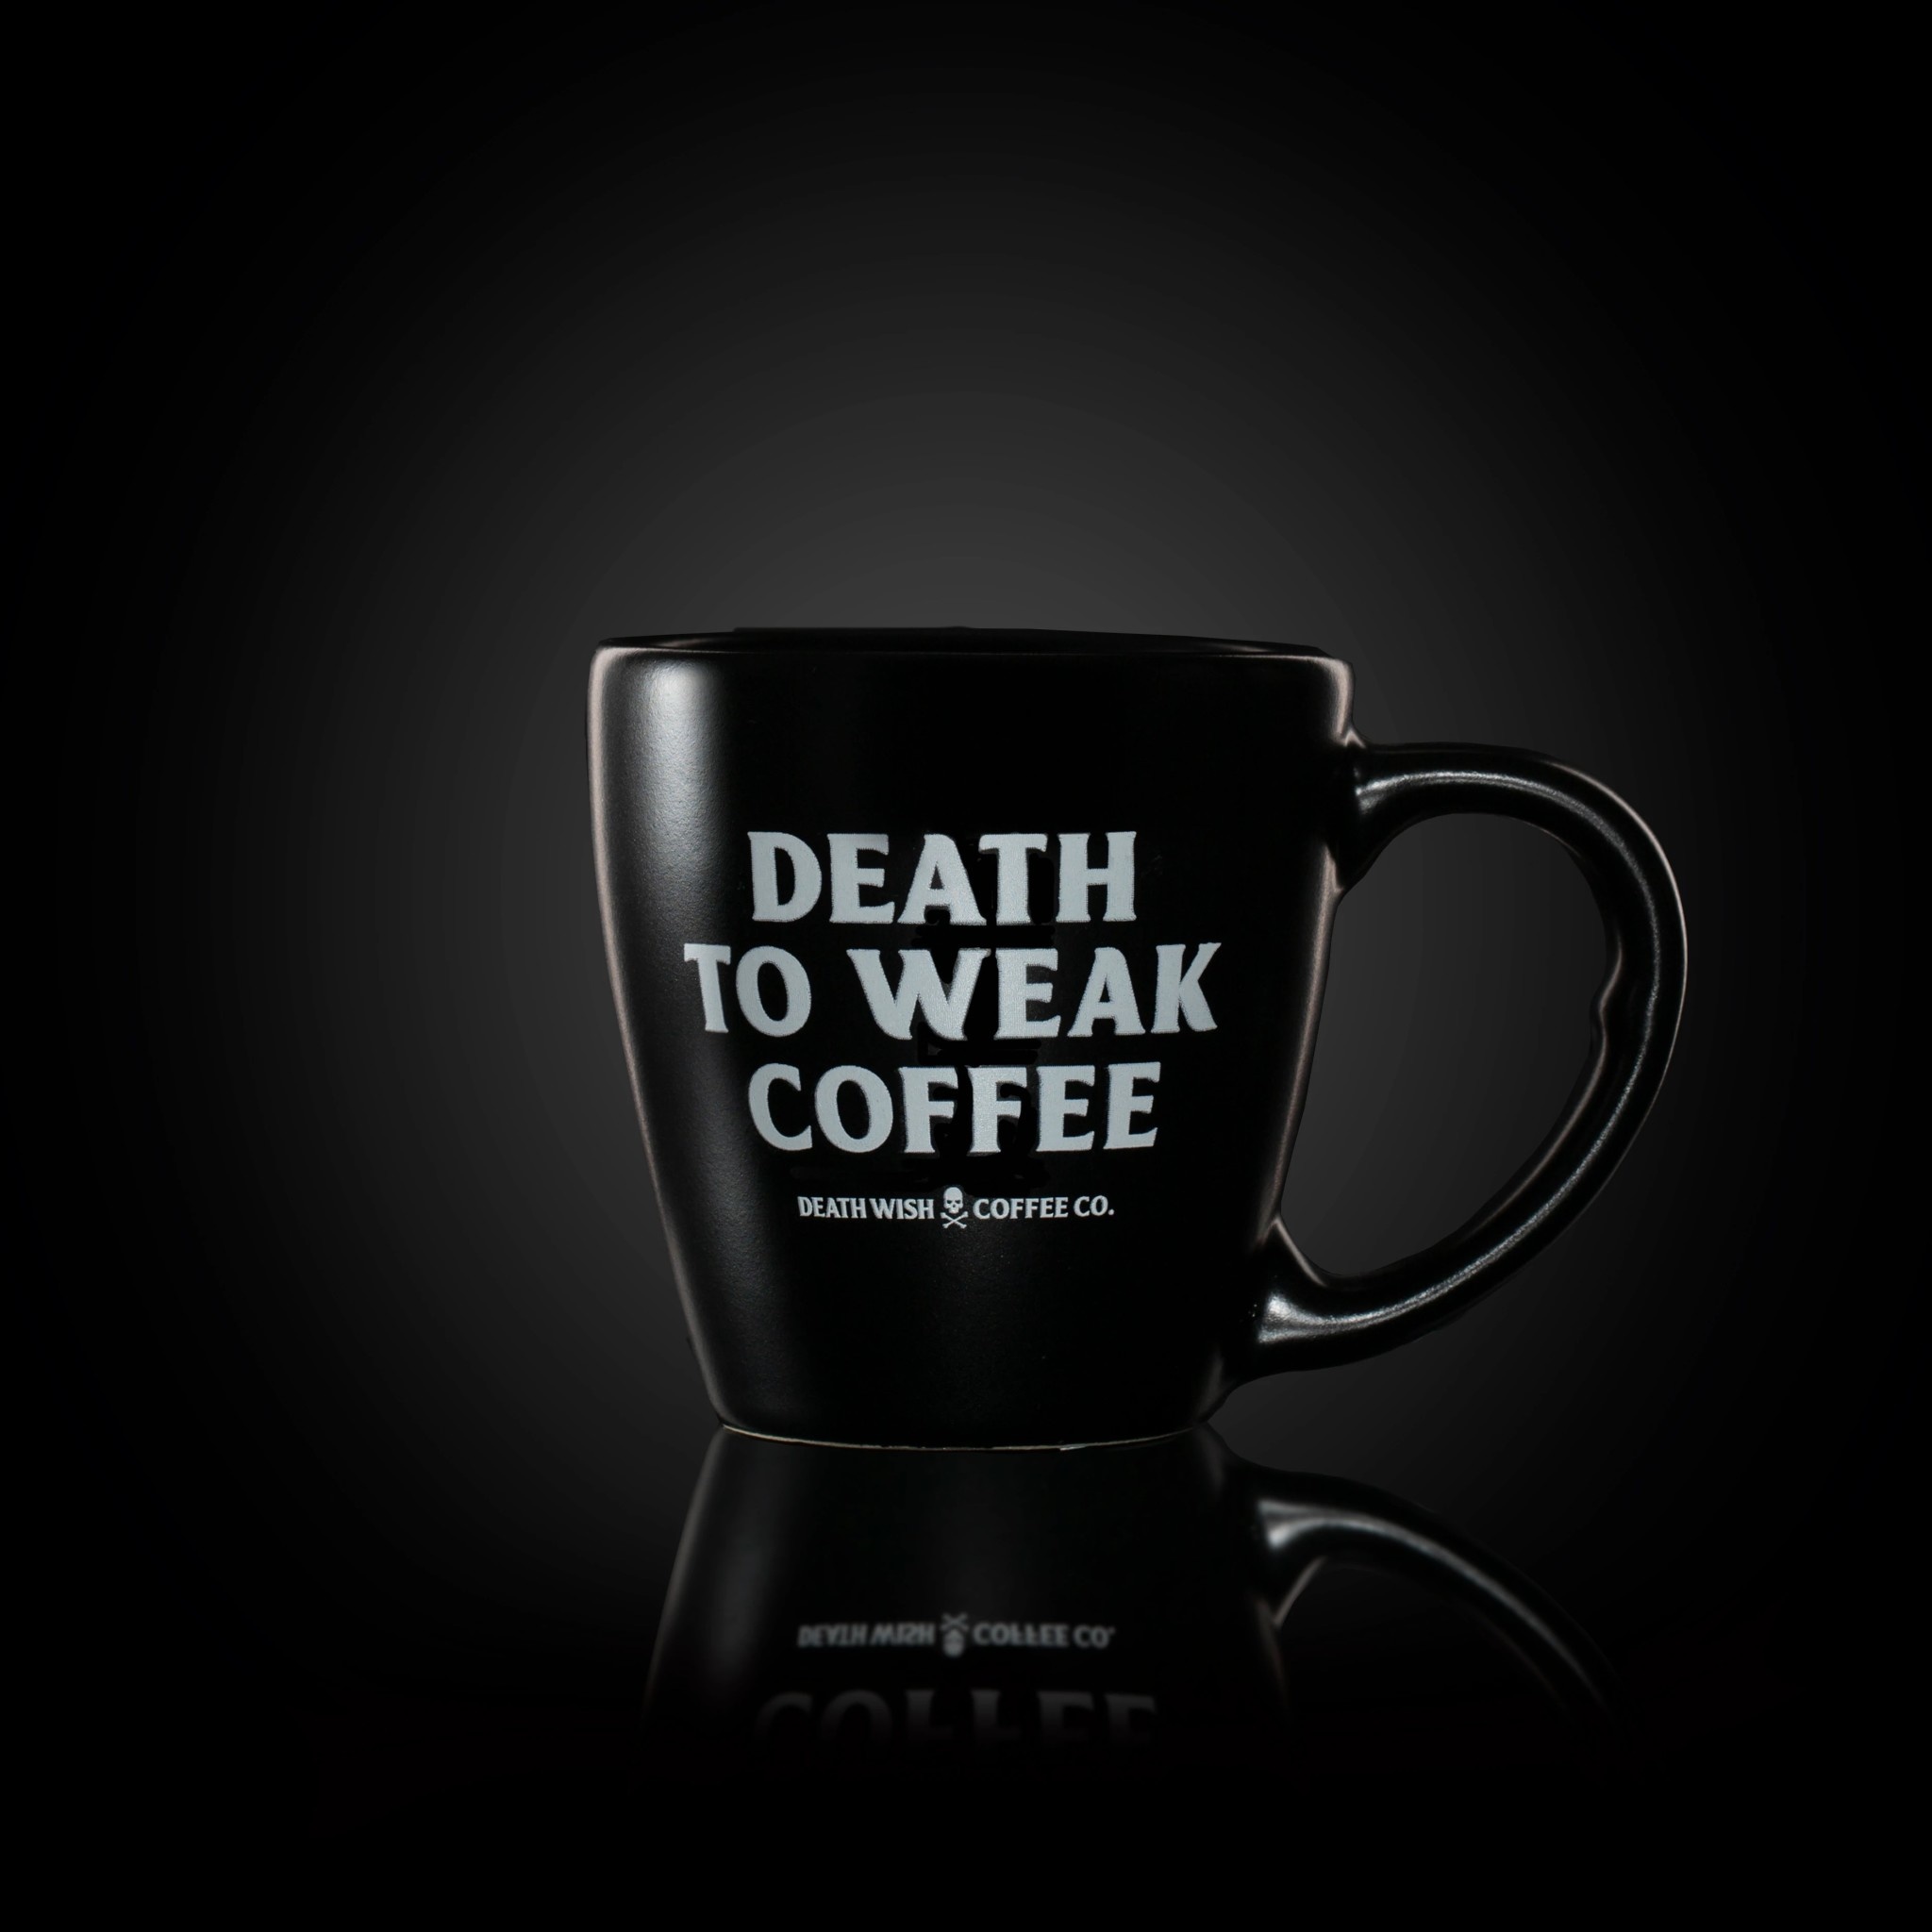 https://cdn.shoplightspeed.com/shops/627376/files/42816906/death-wish-coffee-co-deathwish-death-to-weak-coffe.jpg